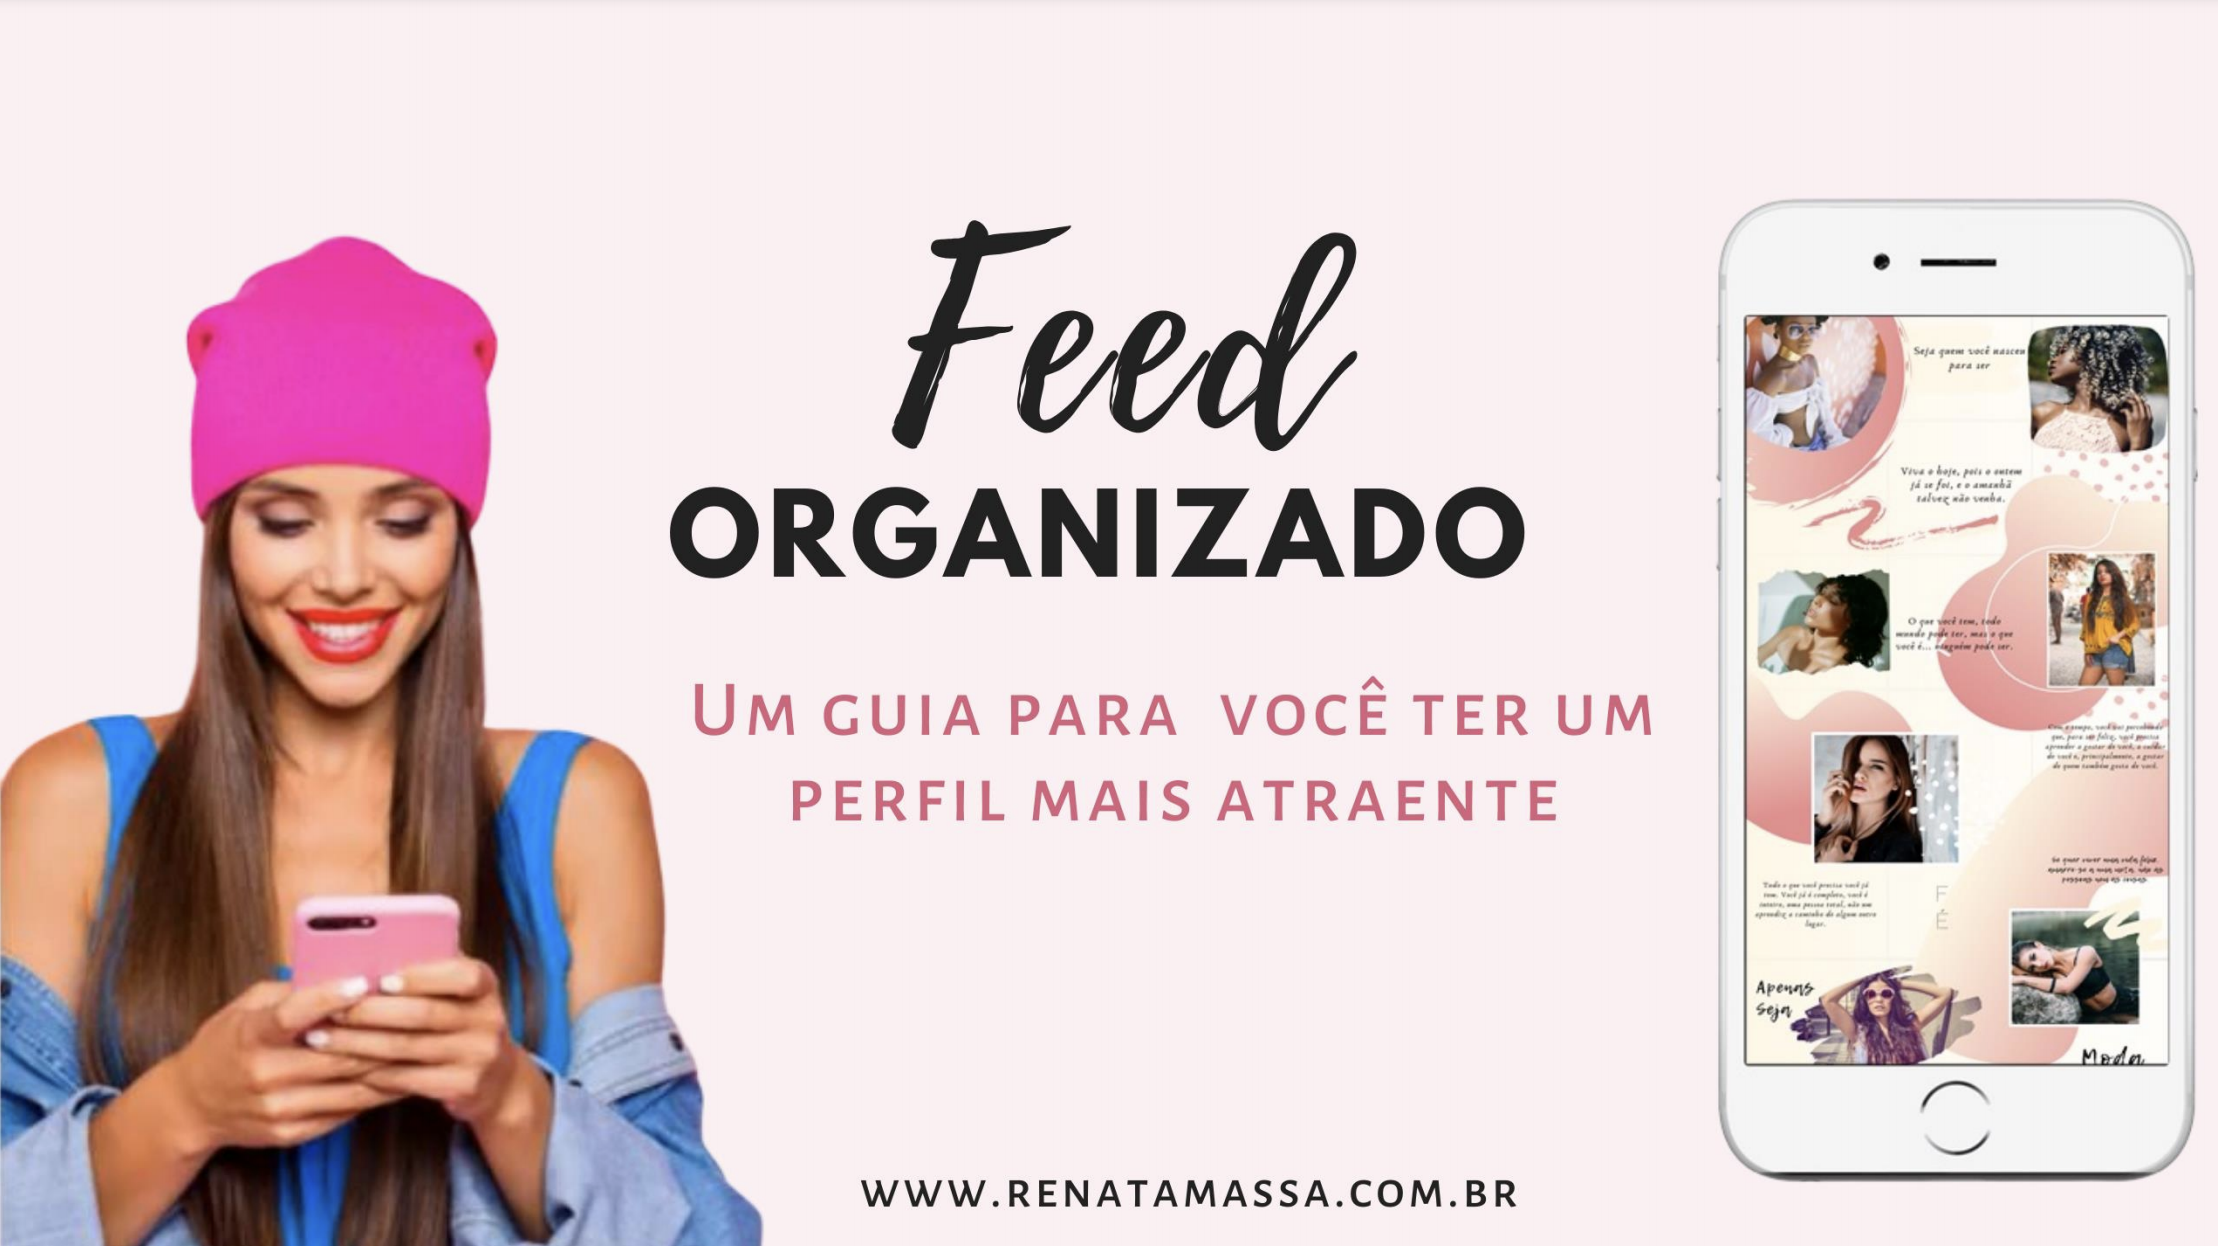 Ebook Feed Organizado no Instagram Por Renata Massa - EBooks Gratuitos - Negócios Online